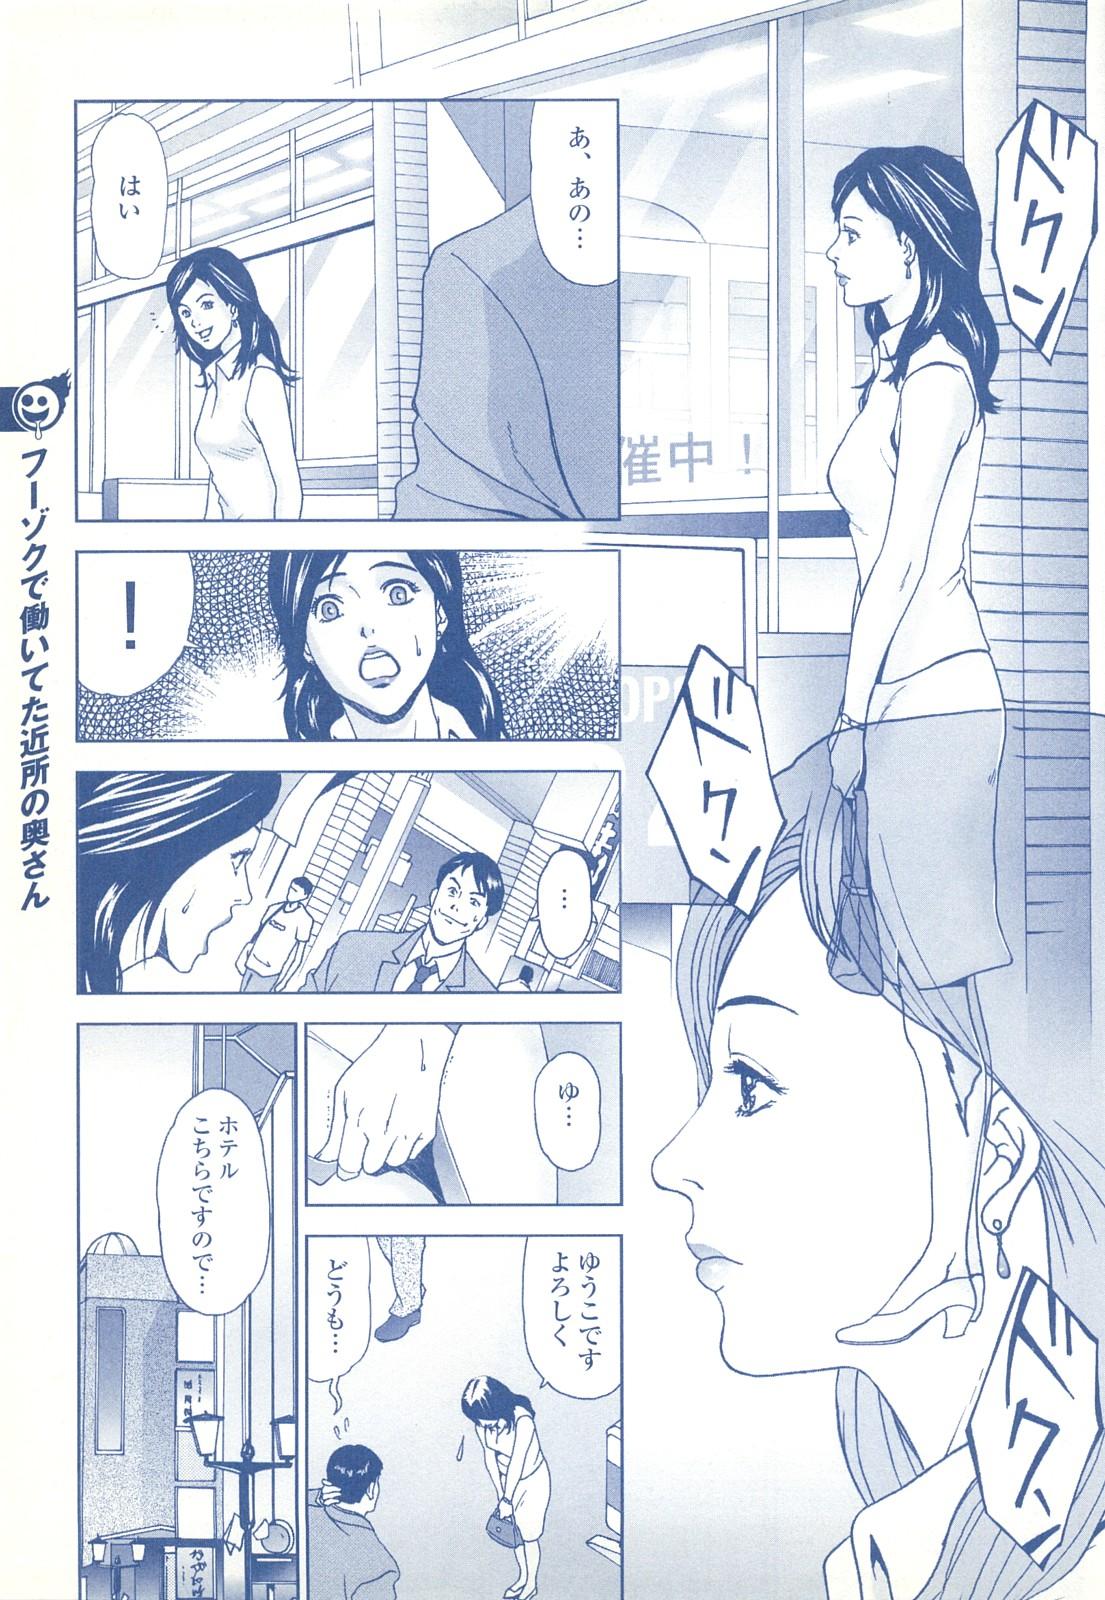 コミック裏モノJAPAN Vol.18 今井のりたつスペシャル号 202